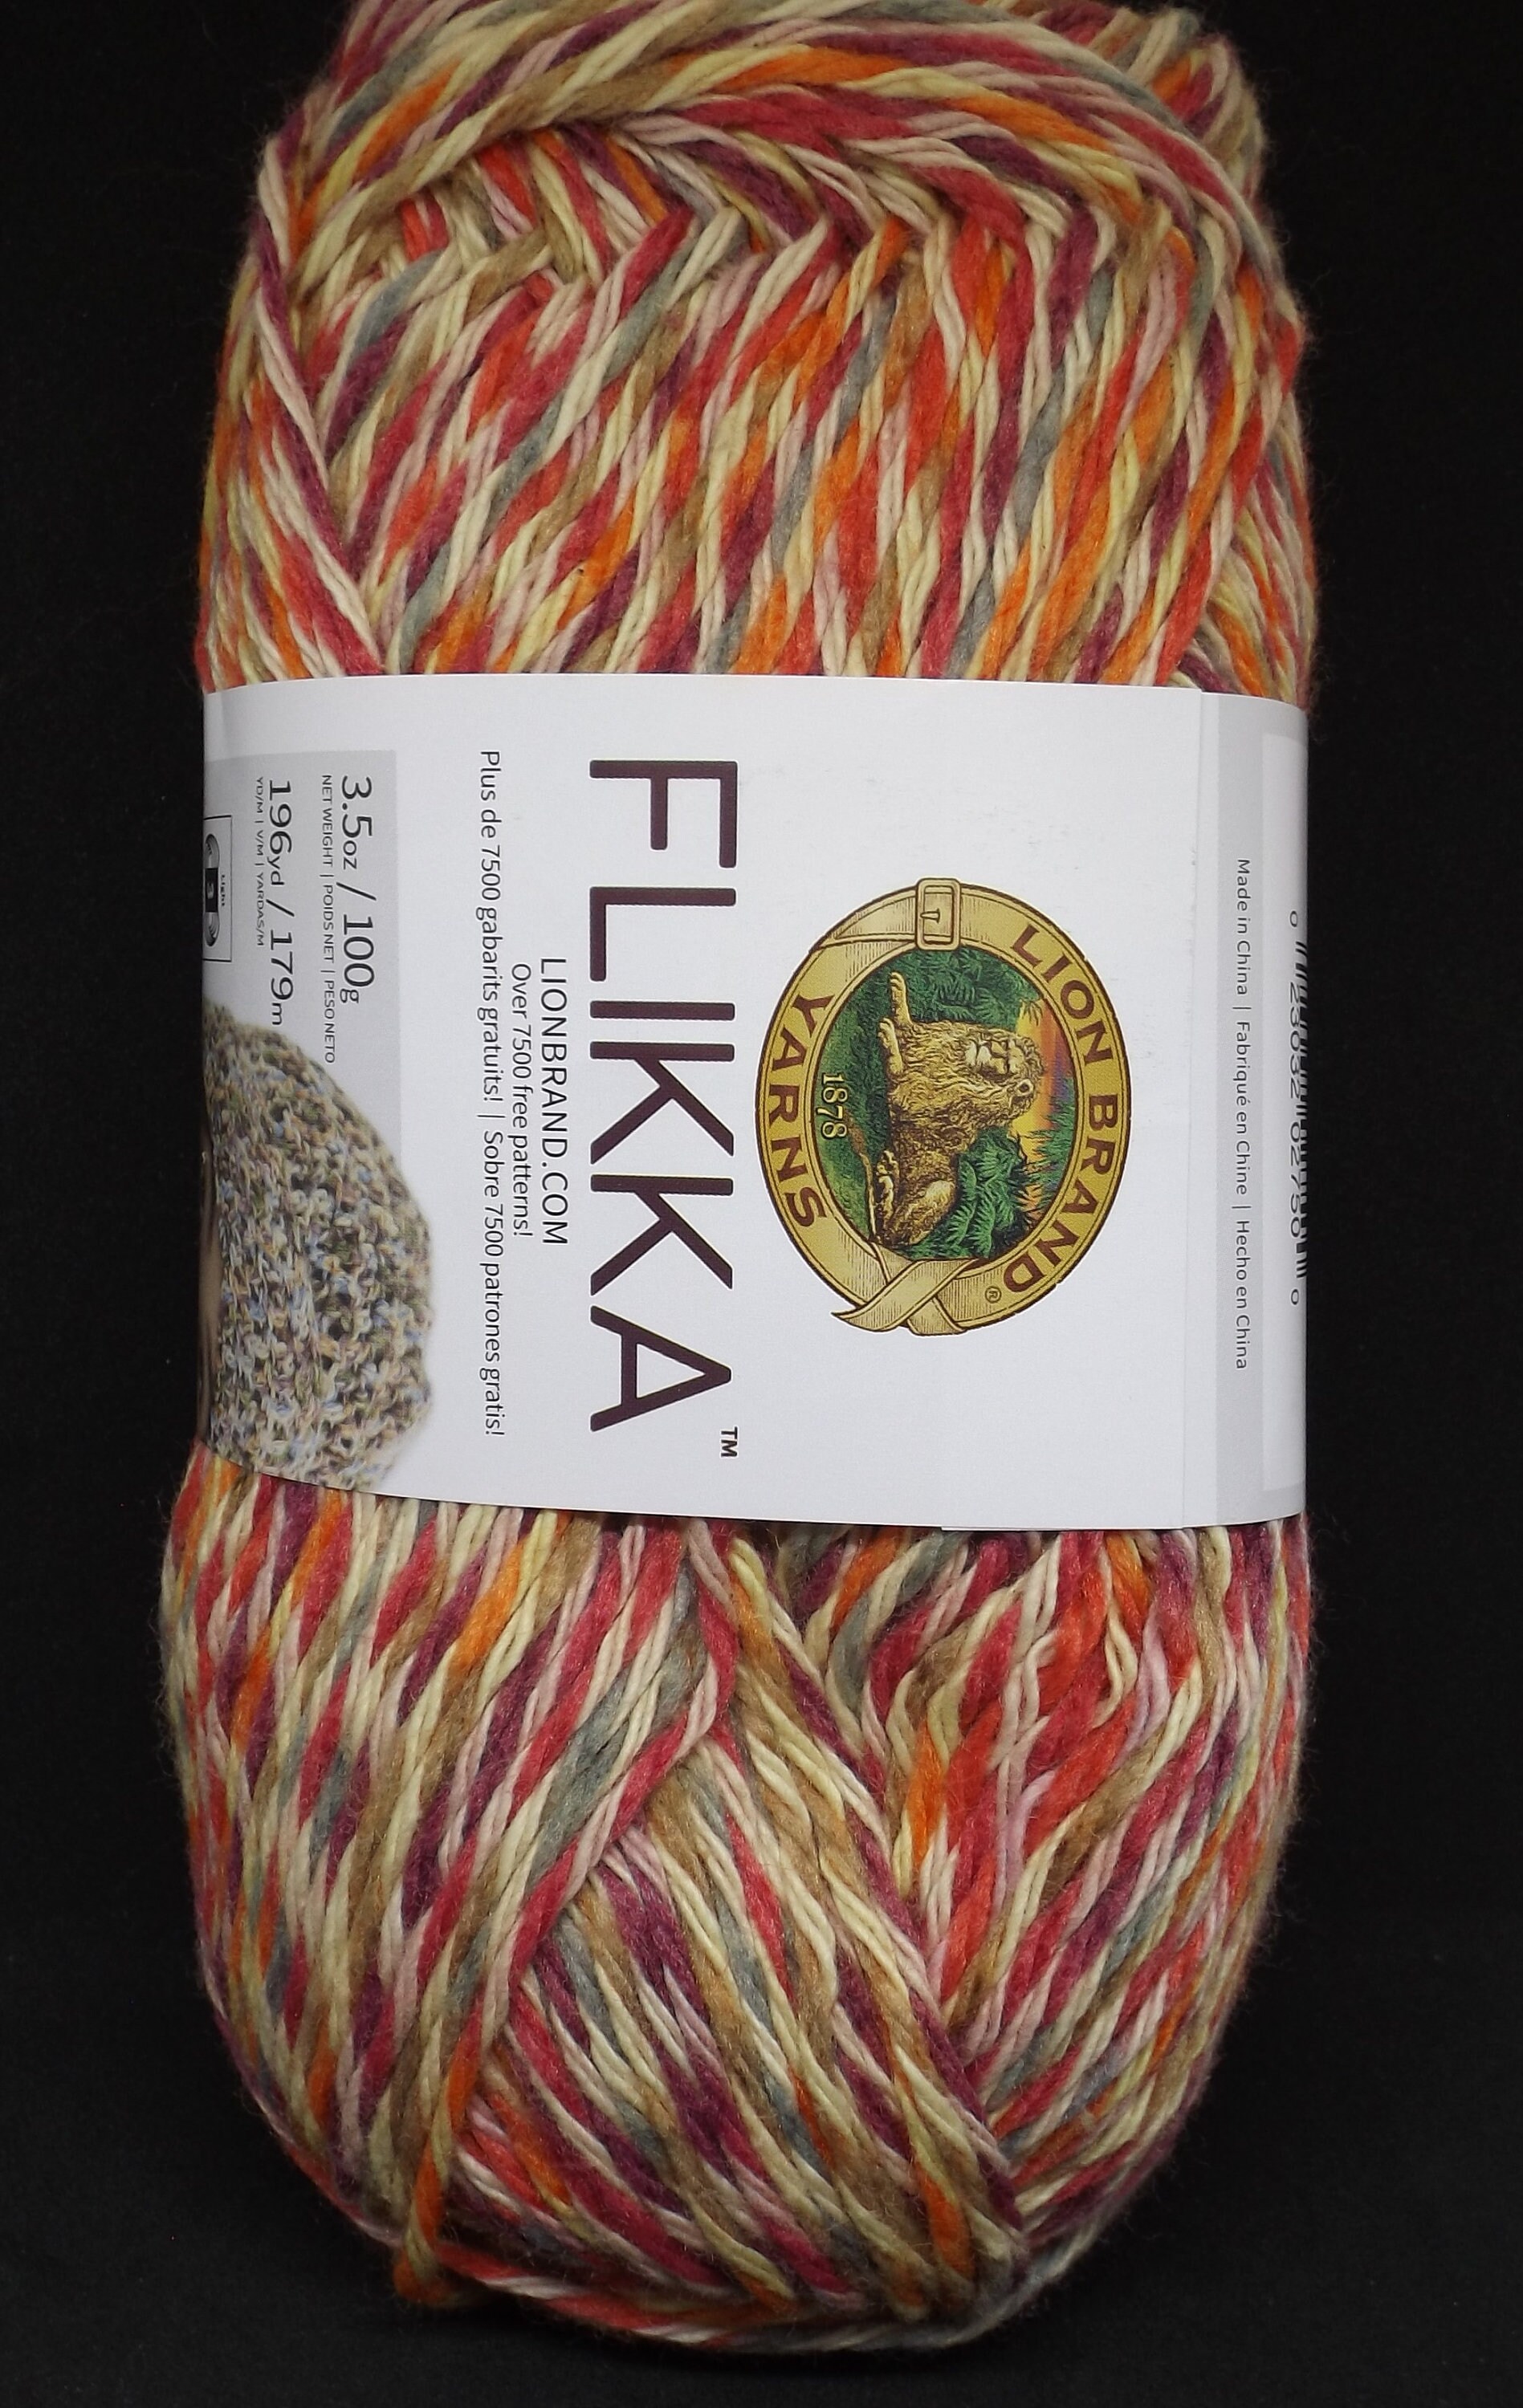 Lion Brand Flikka Yarn 701 Toucan 3.5 Oz/100 Grams 196 Yards/179